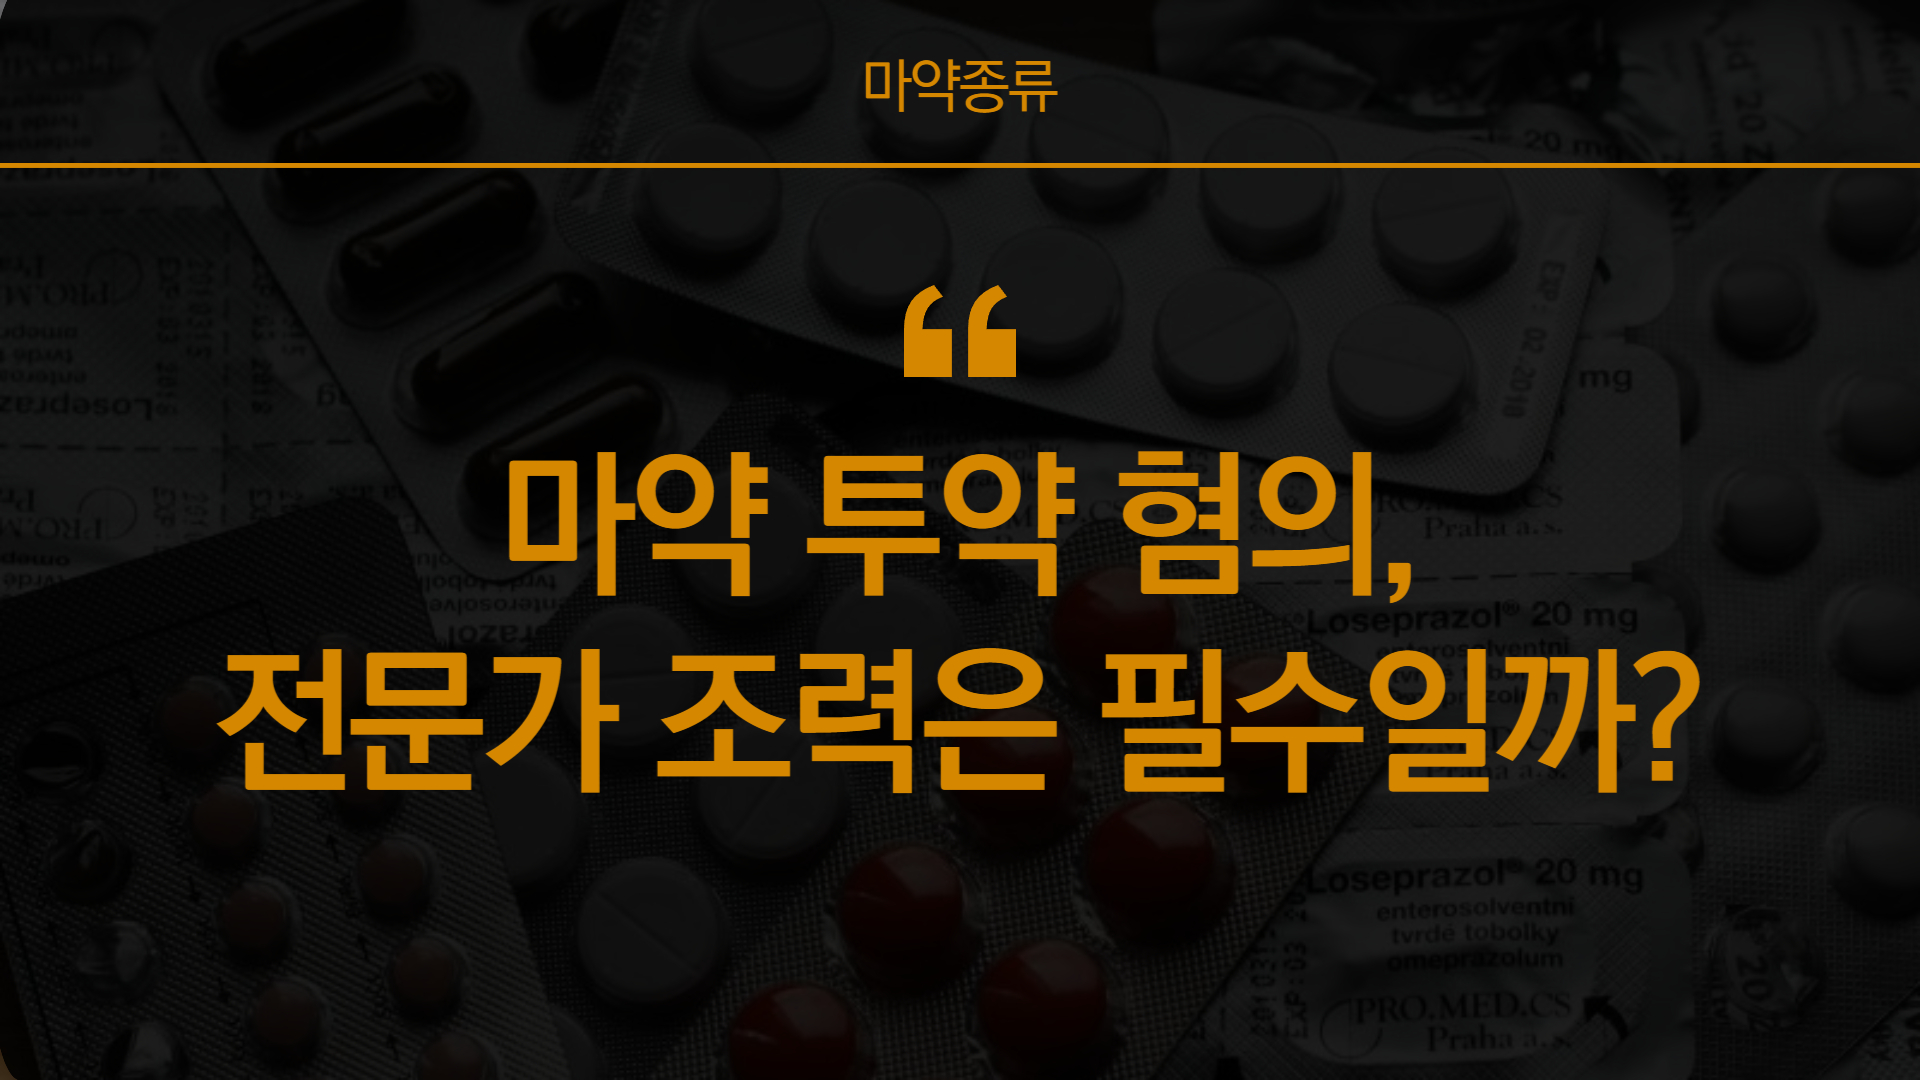 강남마약전문변호사의 조언